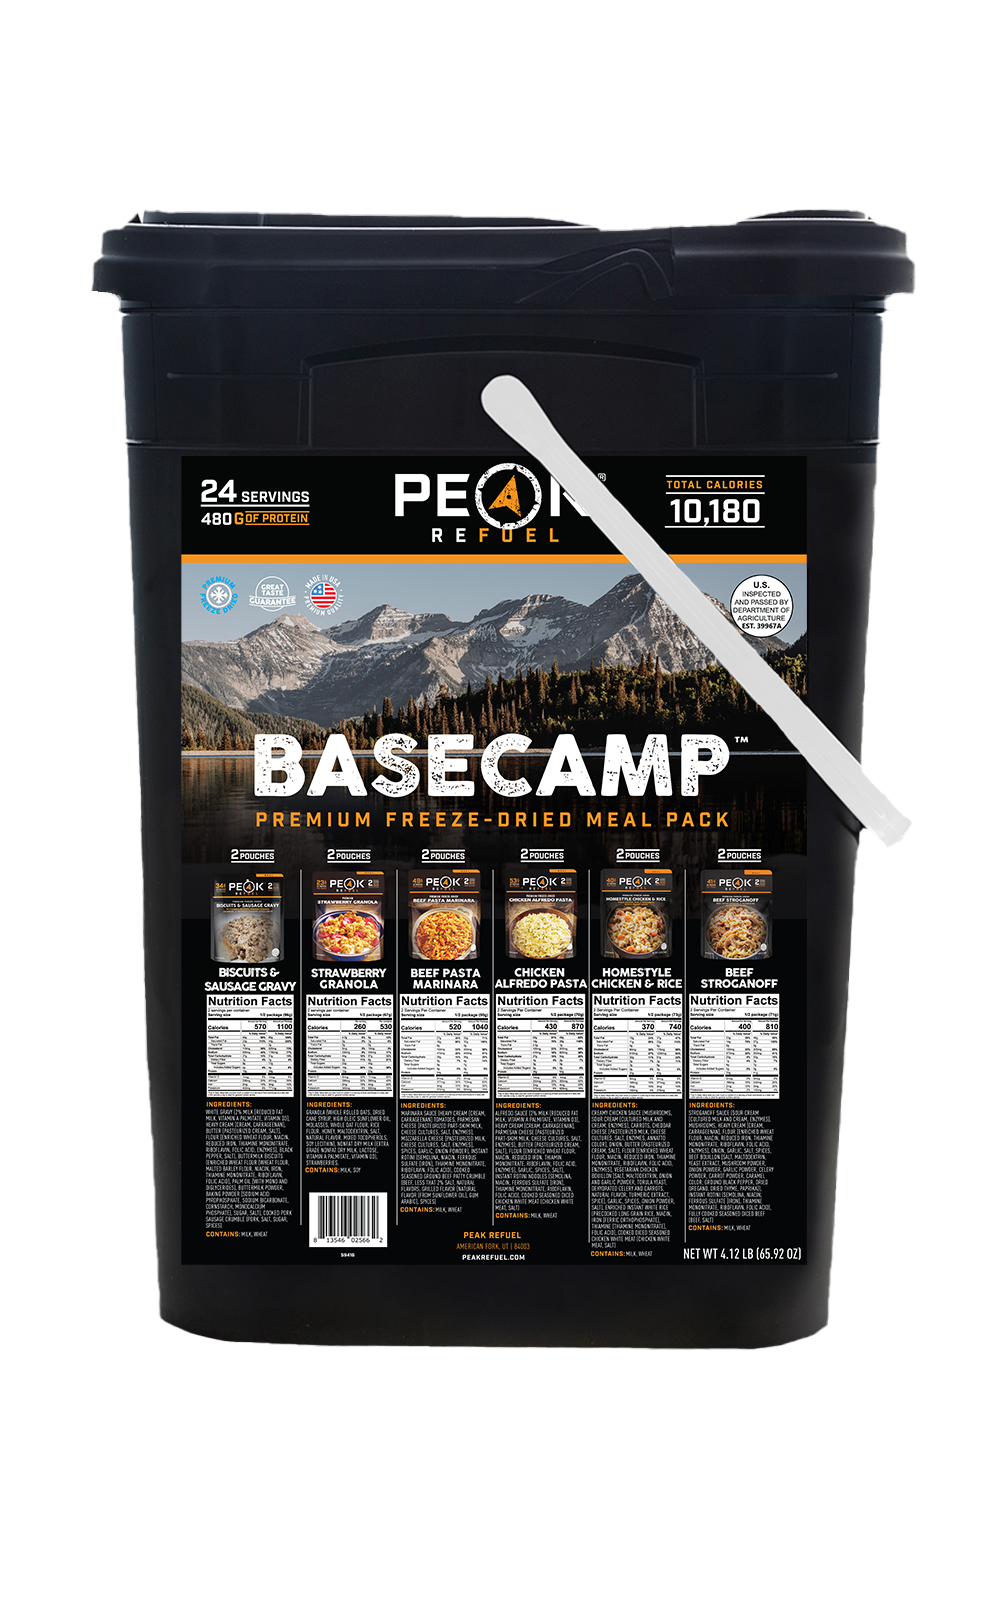 Basecamp 3.0 by Peak Refuel